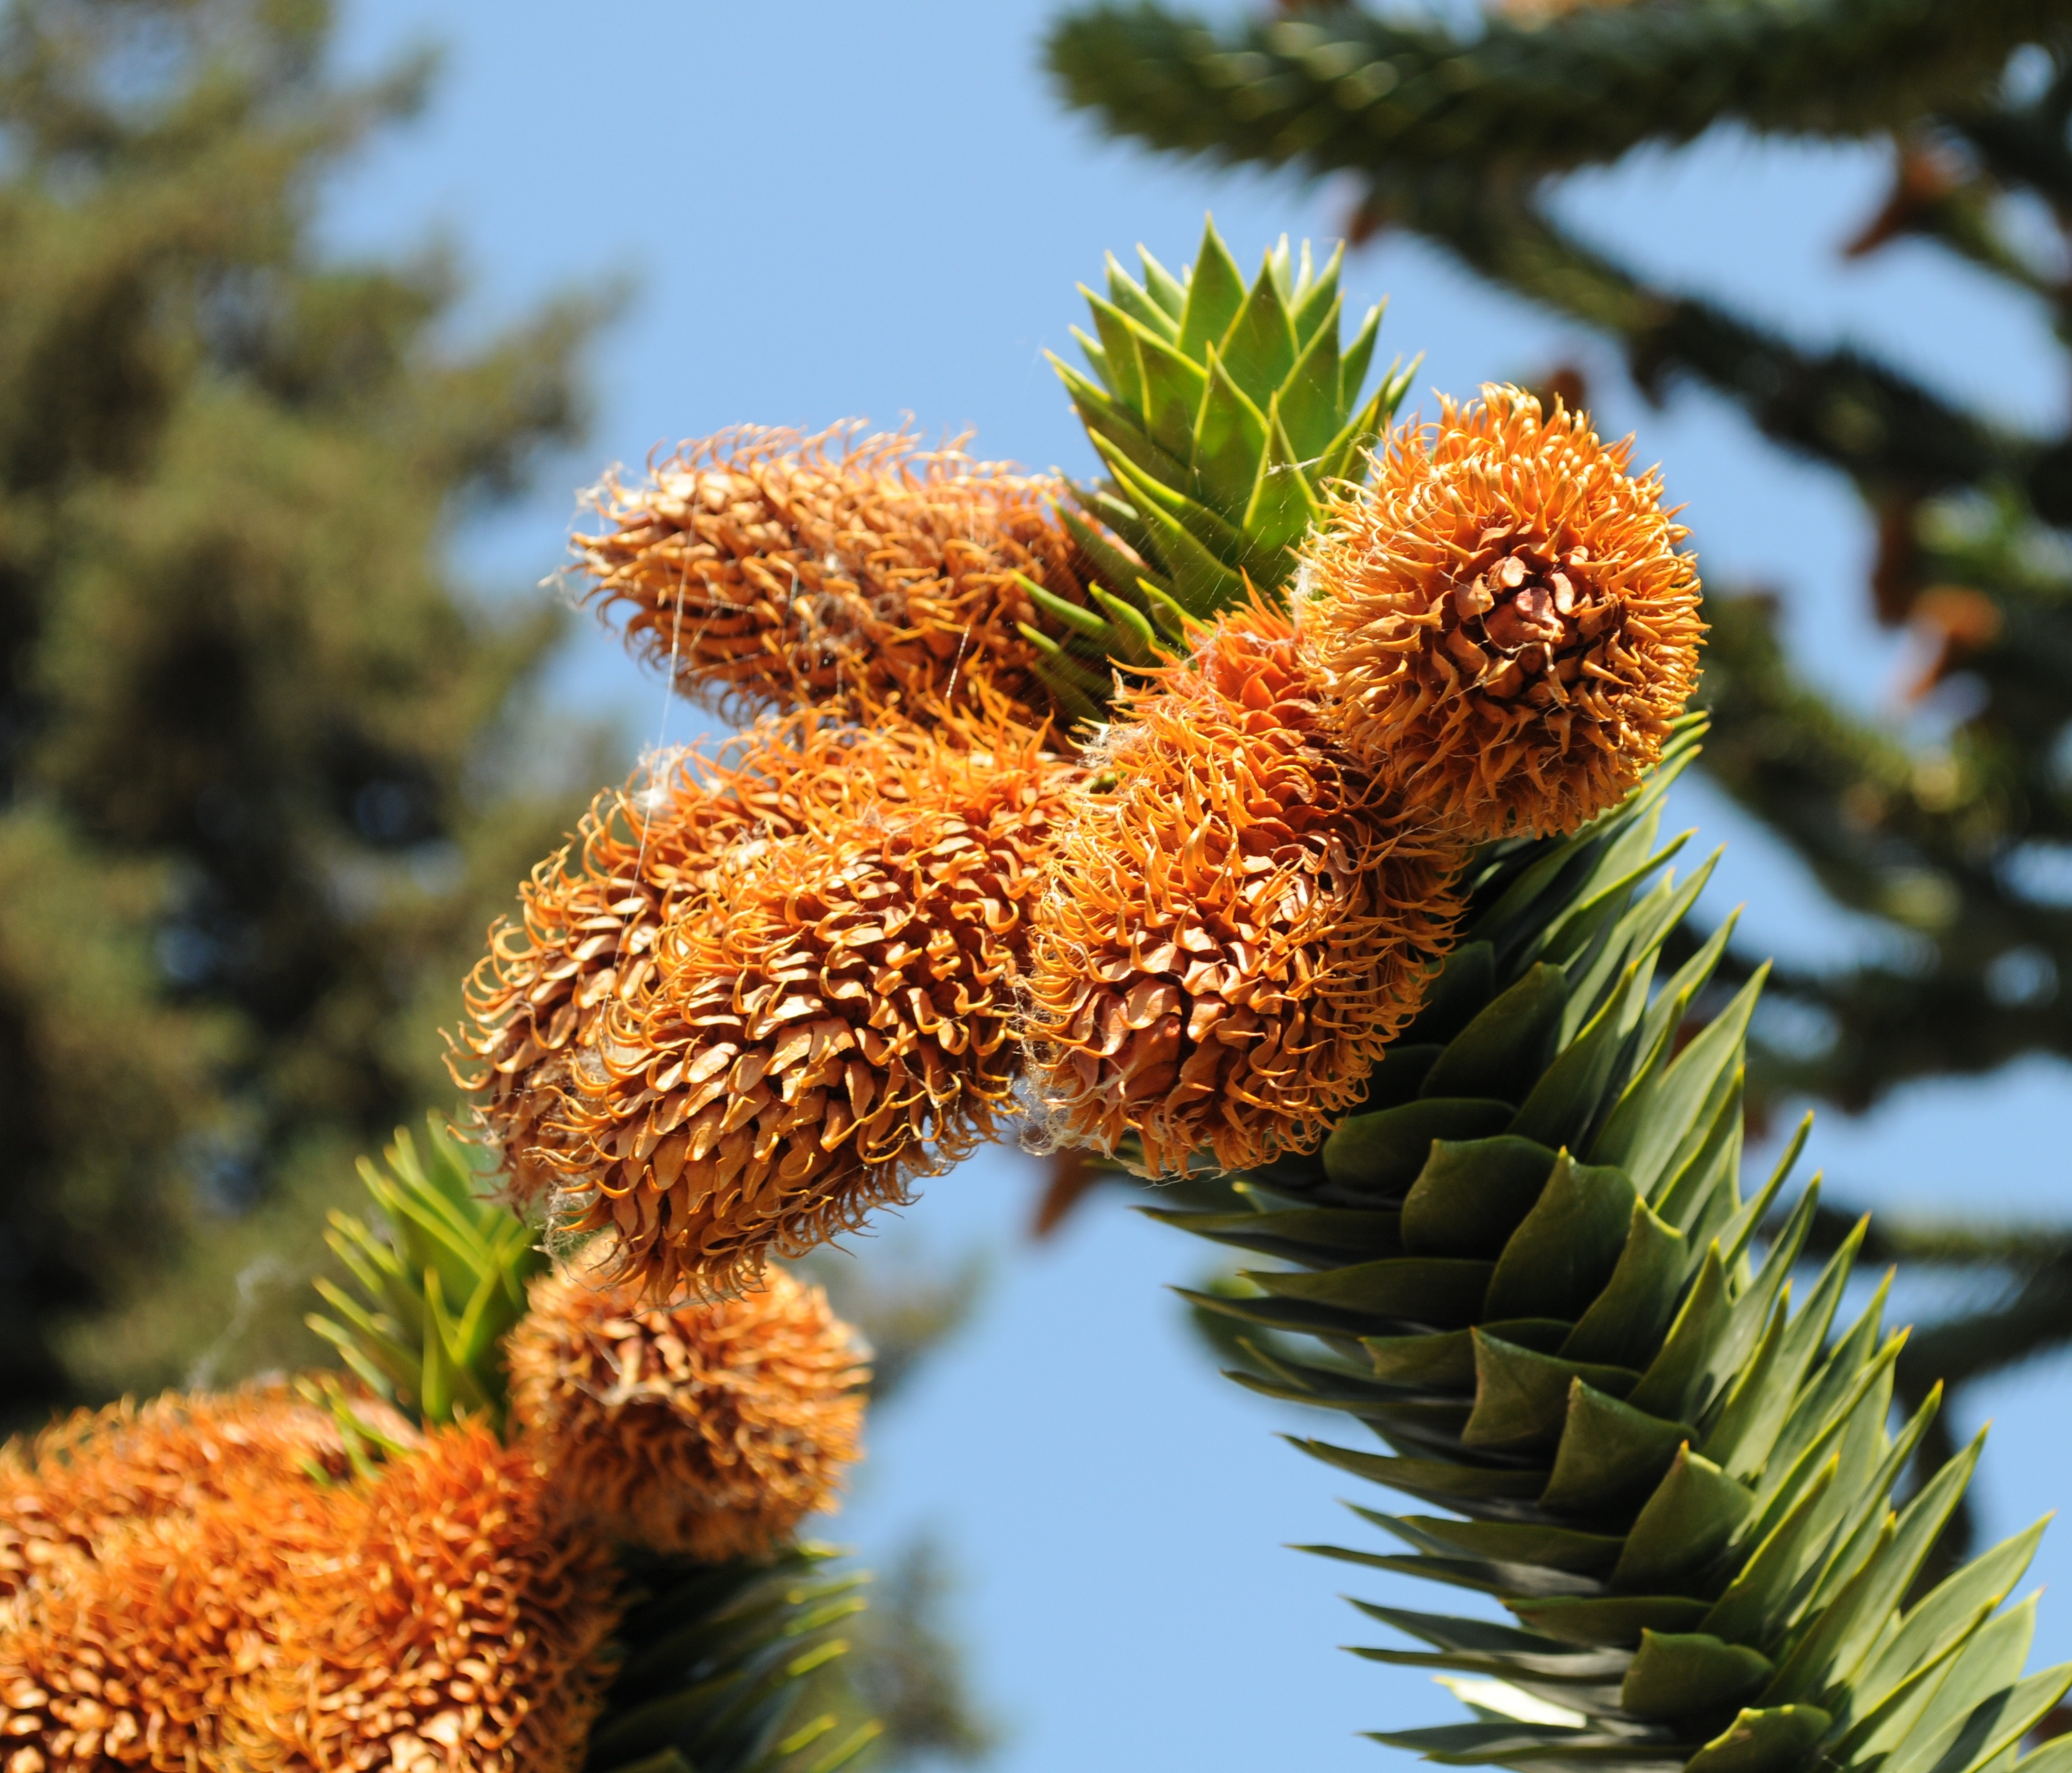 Araucaria, Cones, Tree, Araucana, plant, close-up